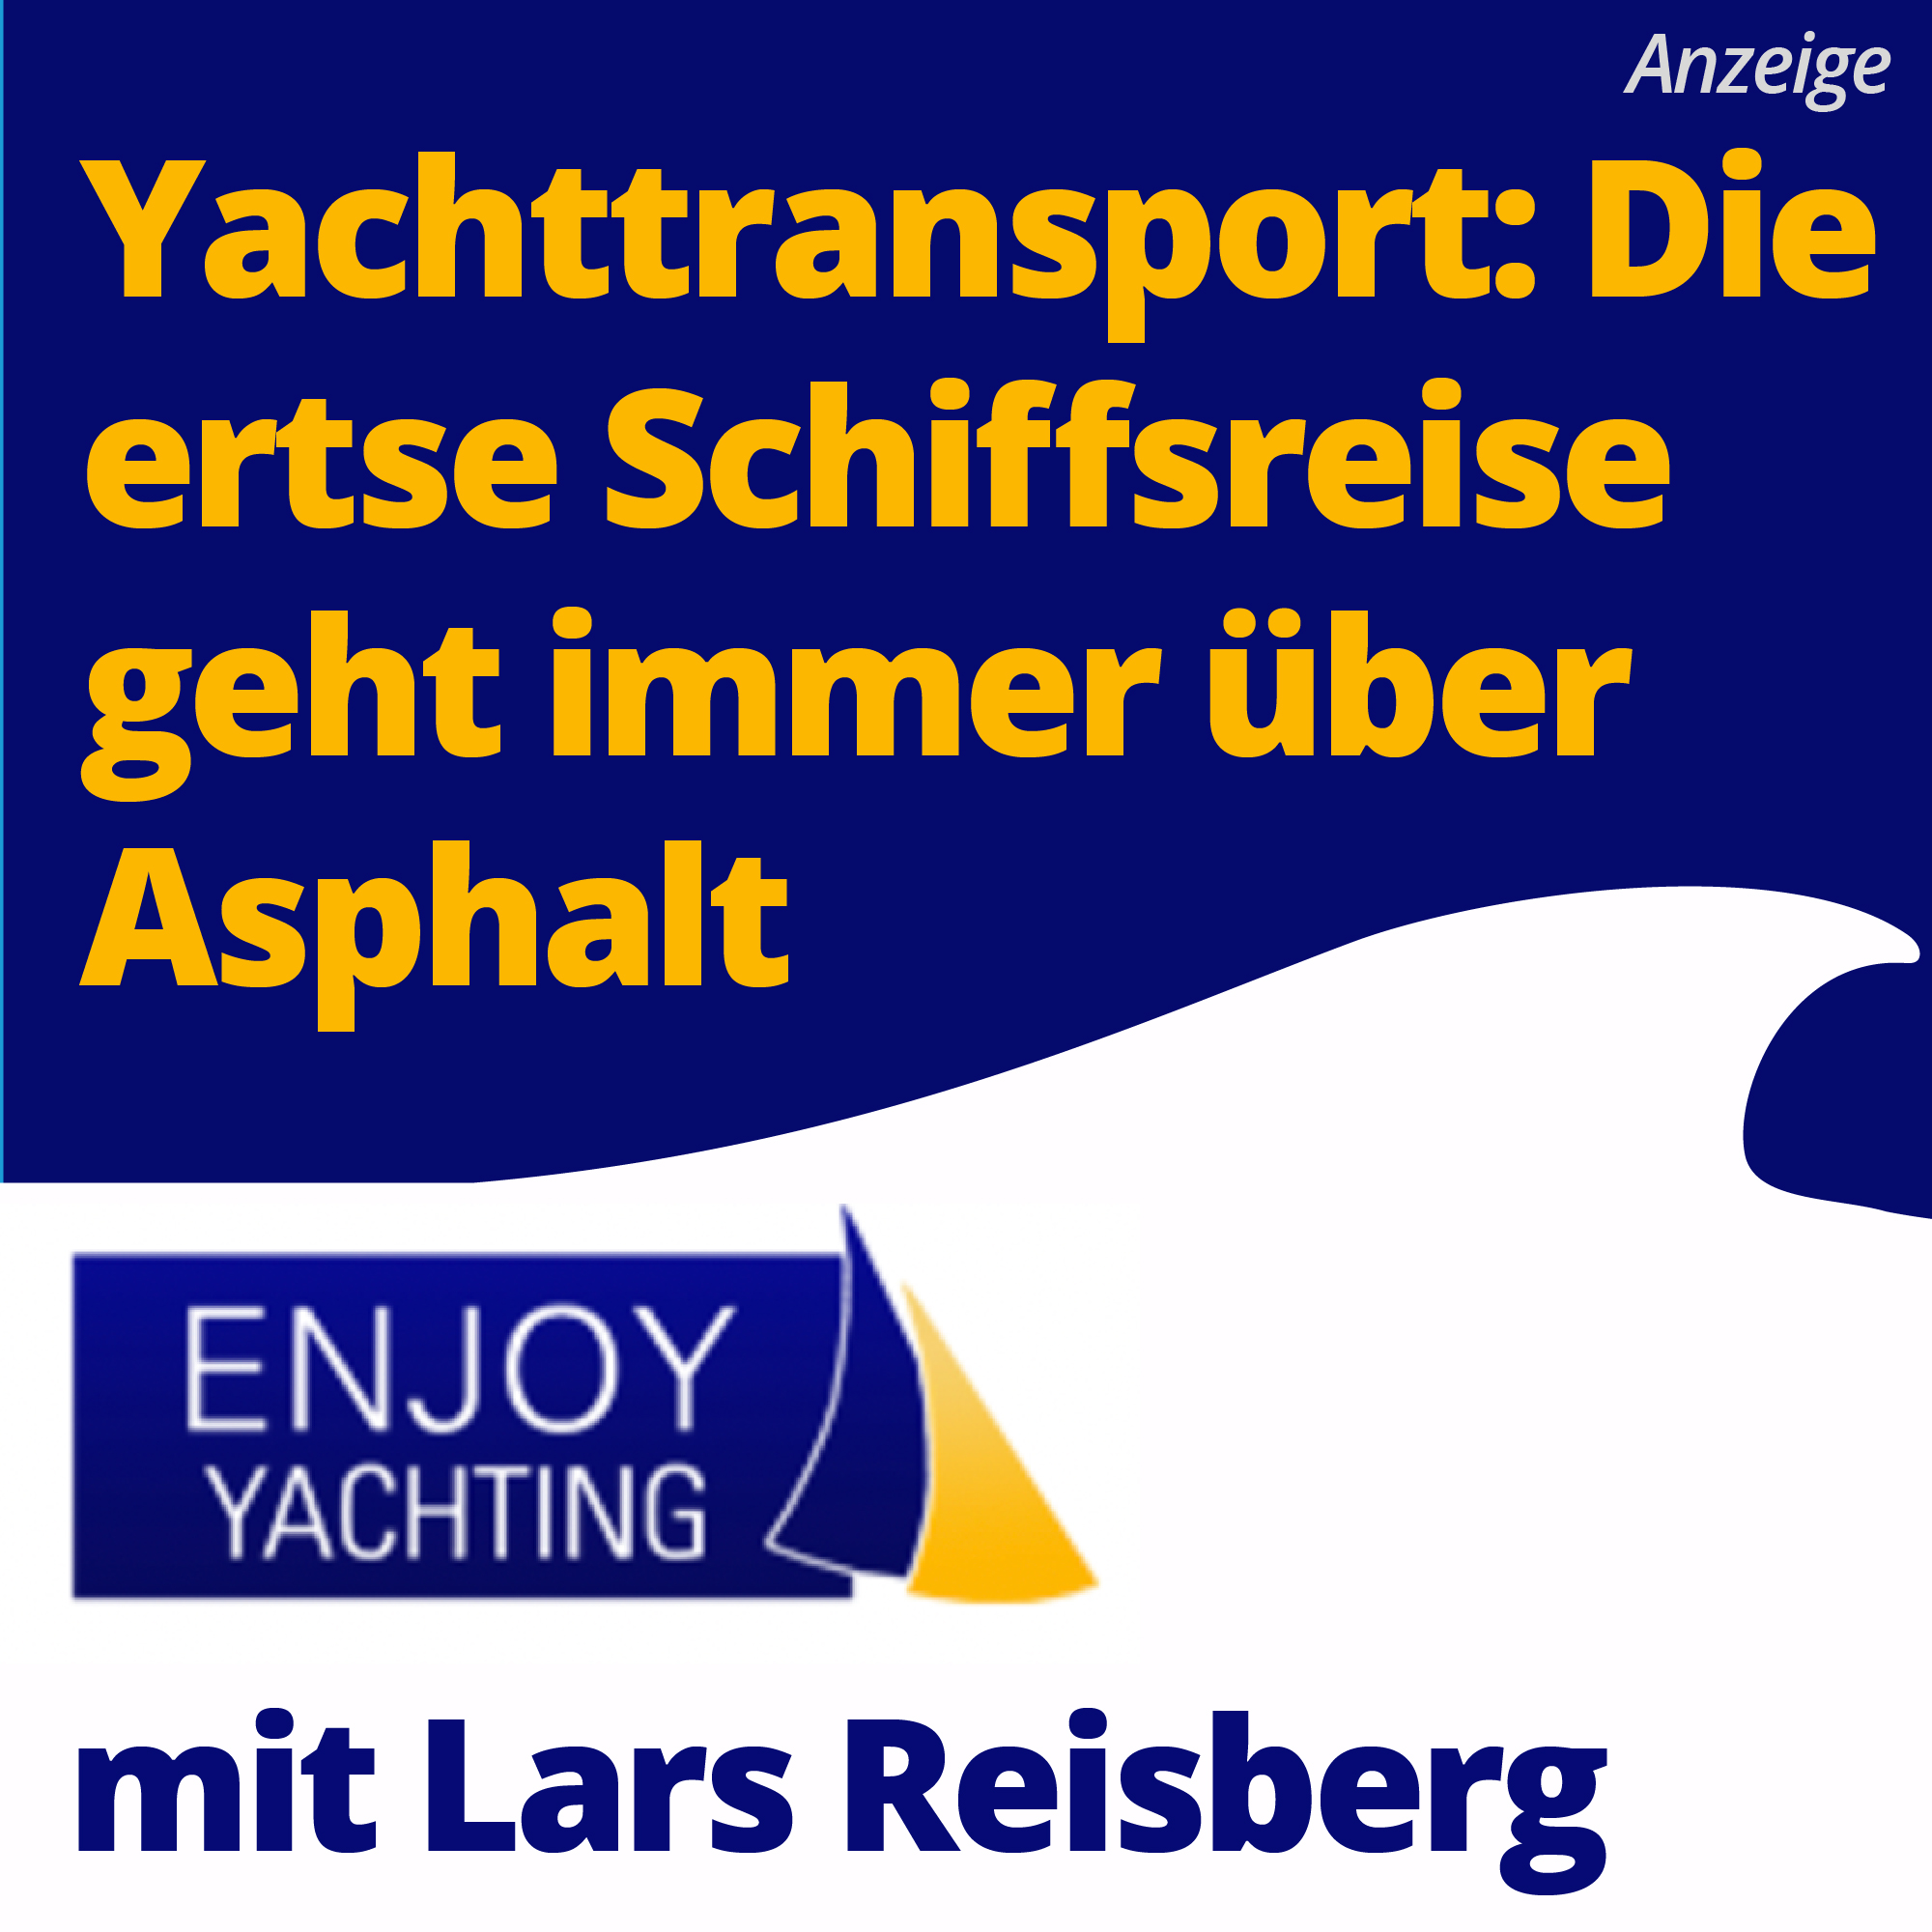 Yachttransport: Die erste Schiffsreise geht immer über Asphalt